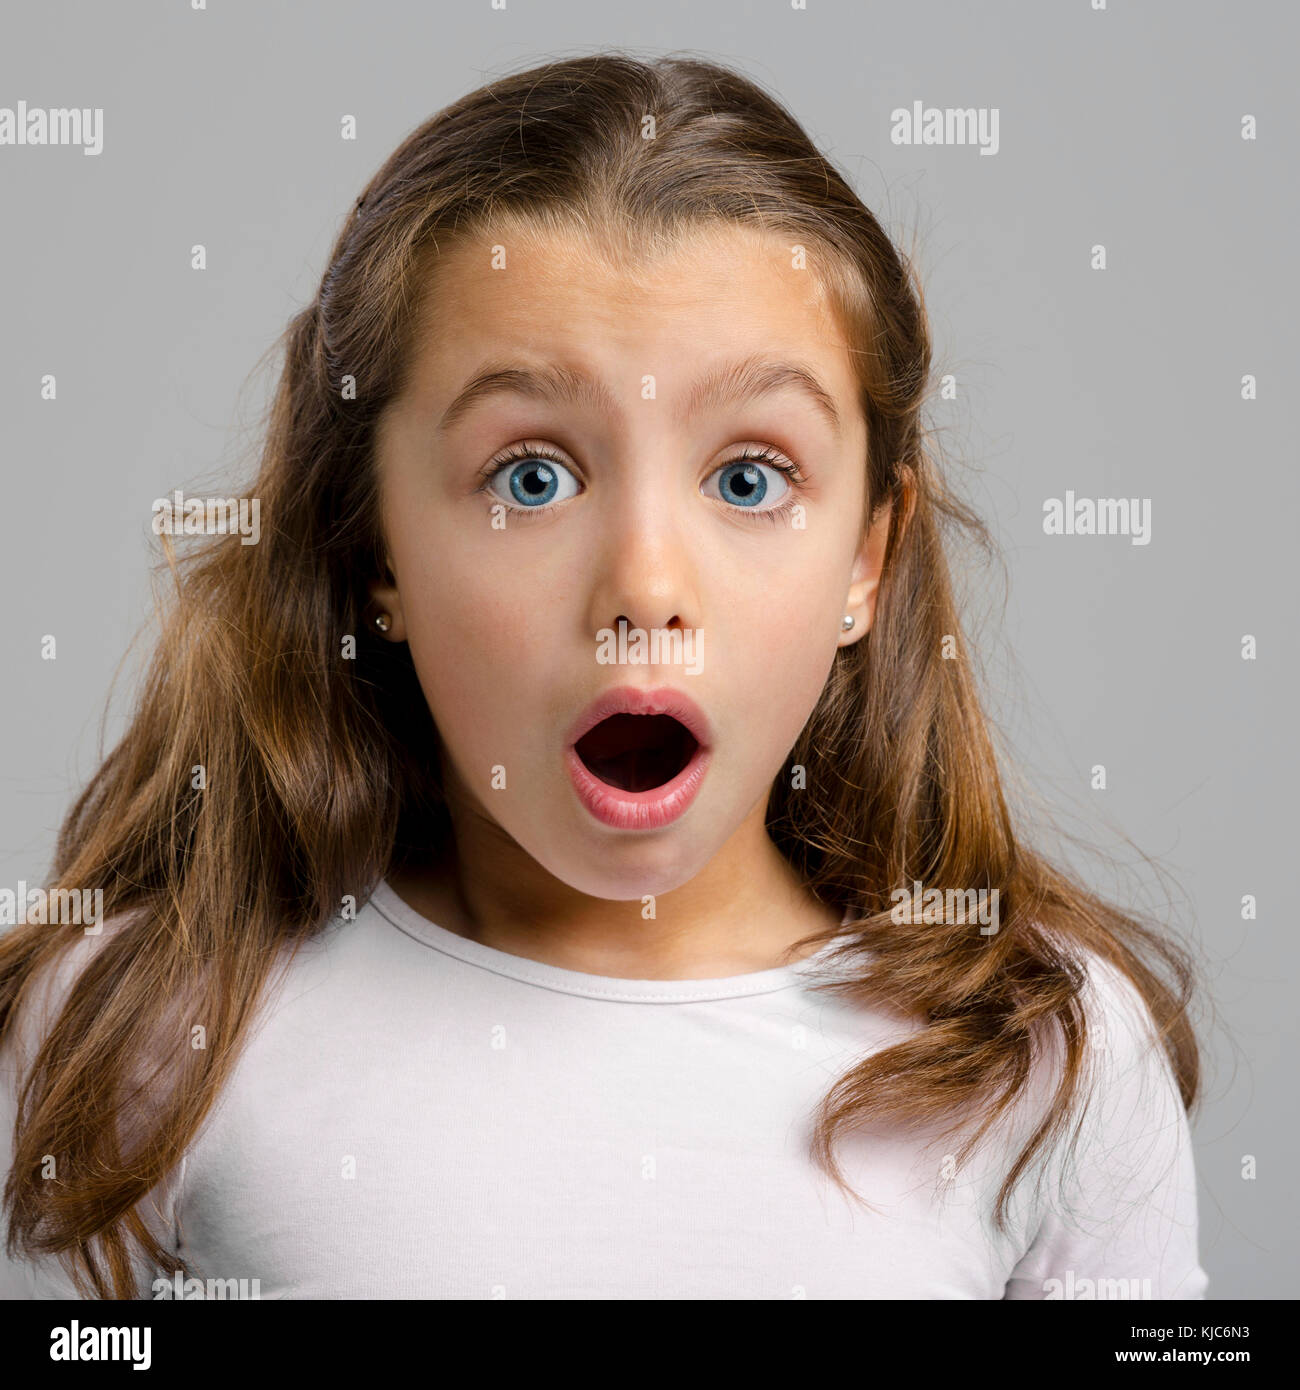 Porträt von einem kleinen Mädchen einen erstaunten Ausdruck Stockfoto